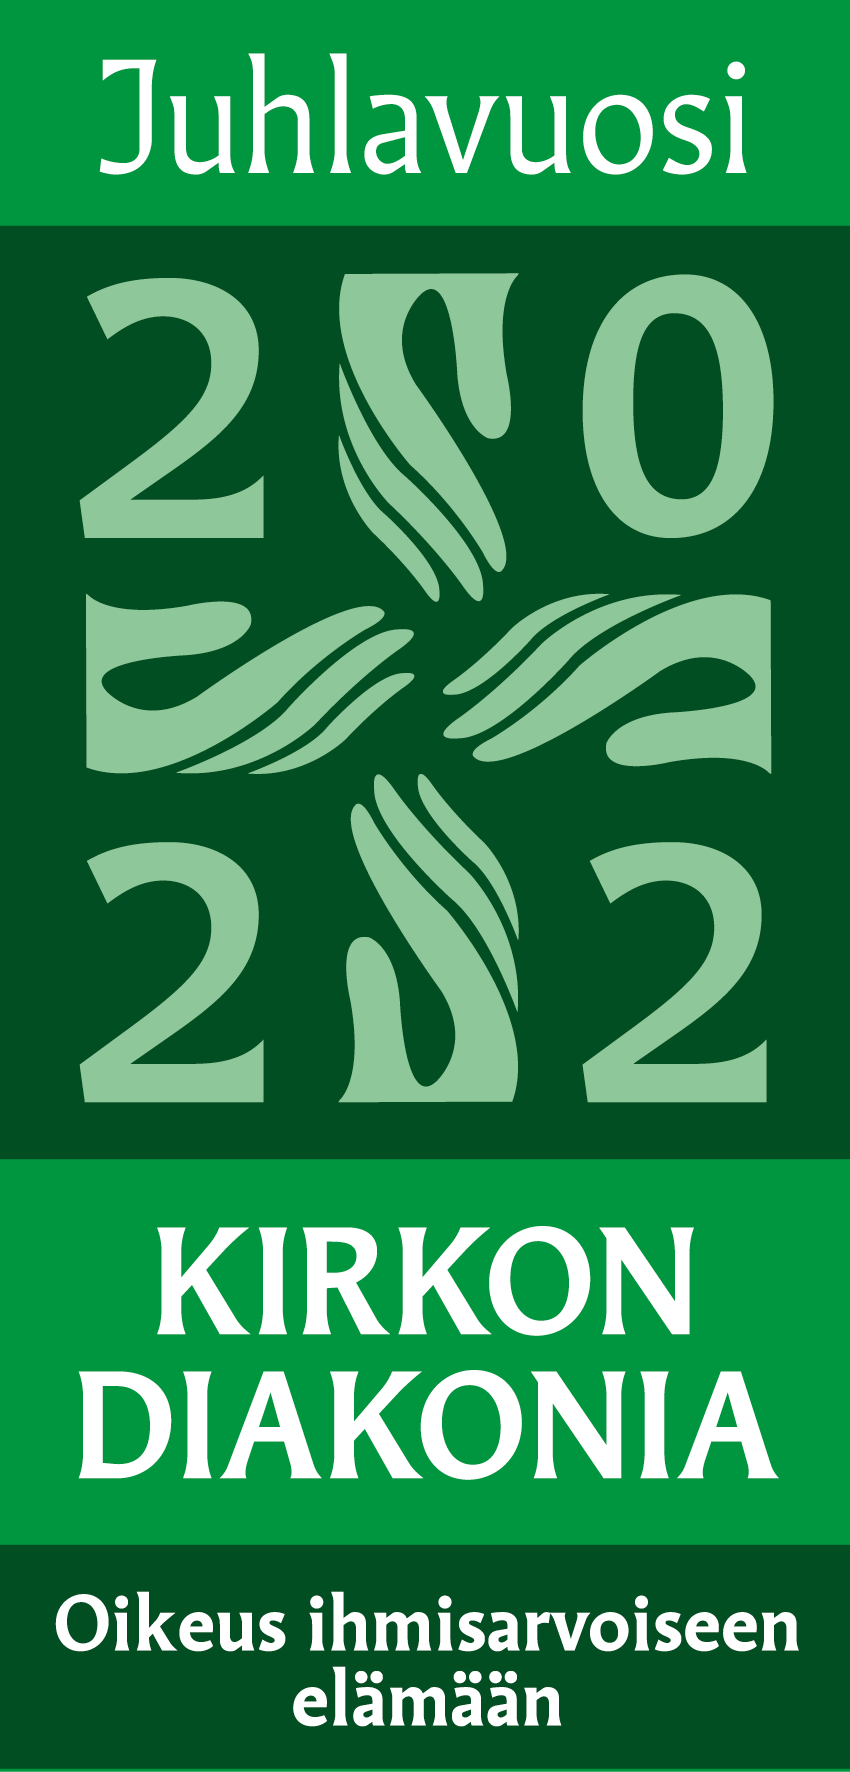 Vihreällä pohjalla diakoniatyön logo, neljä kämmentä, siihen punottuna numerot 2020. Yläpuolella teksti Juh...